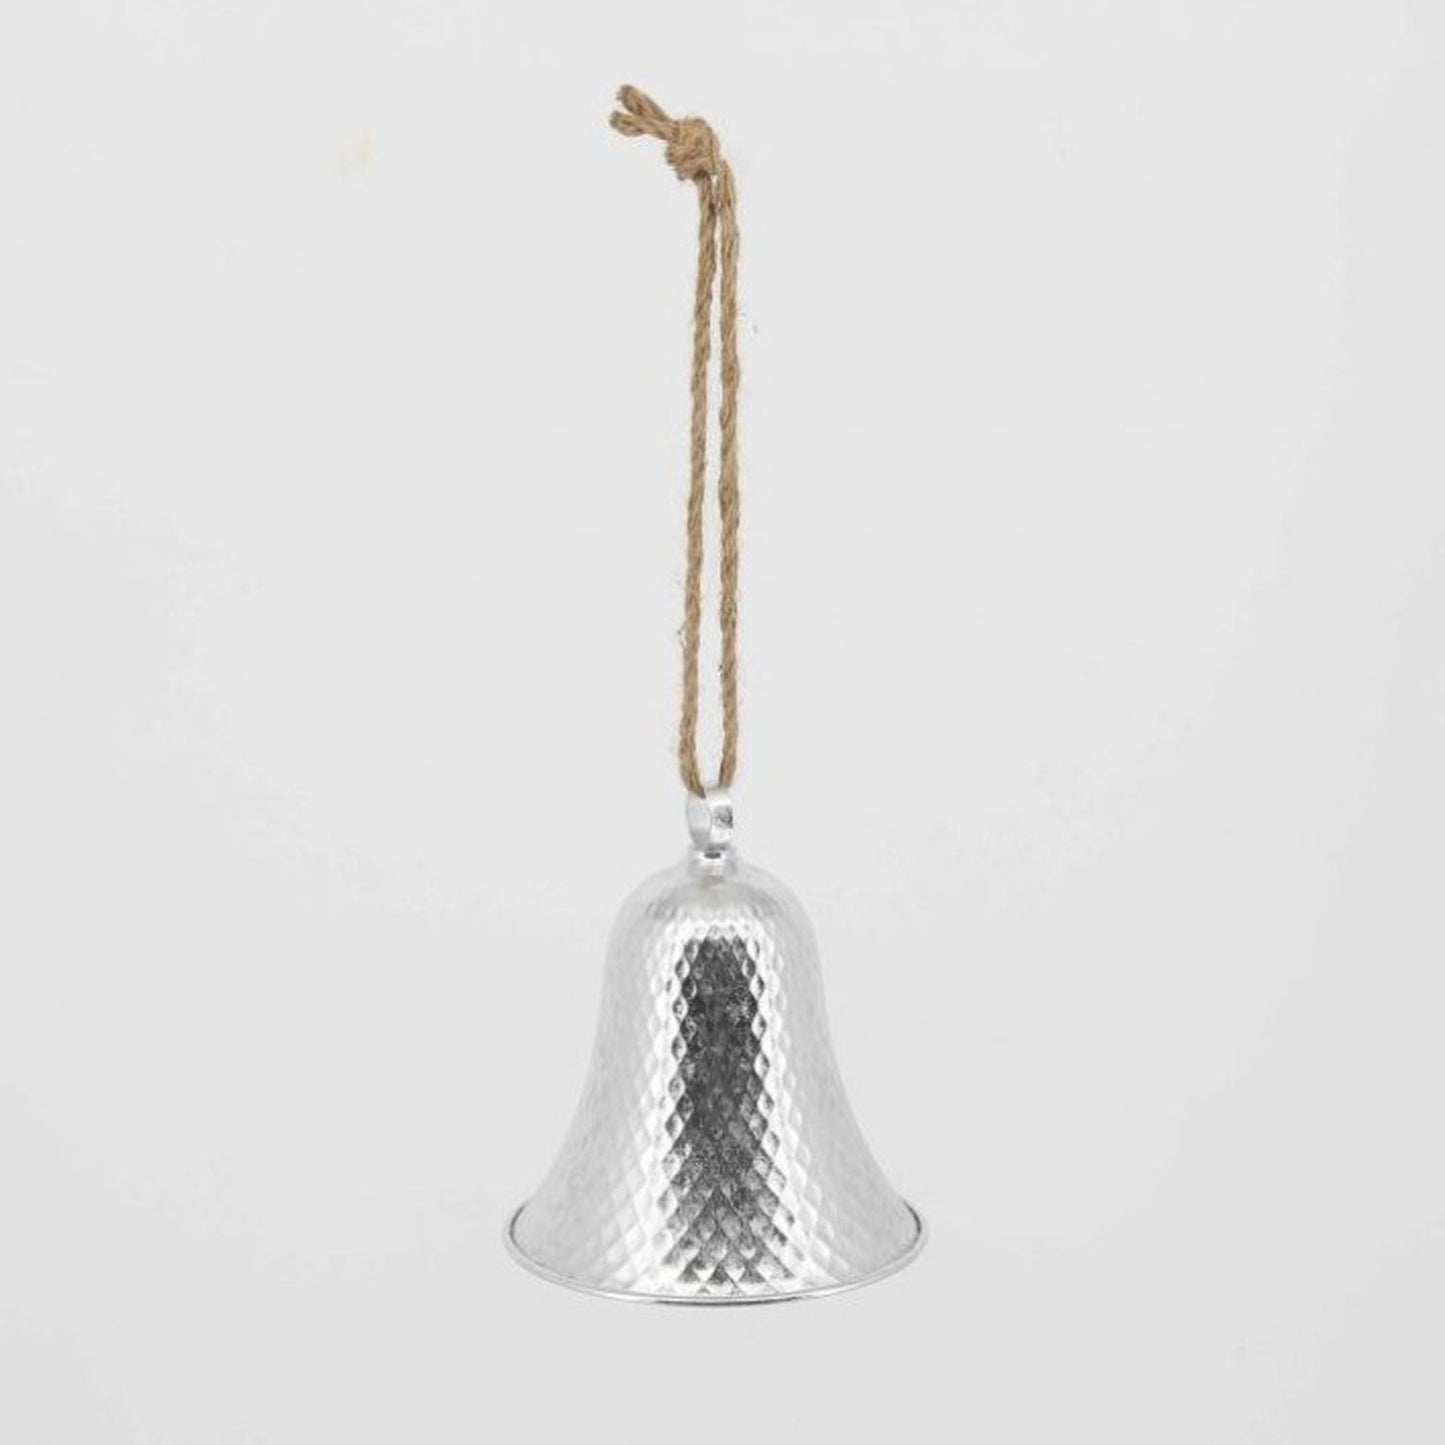 Regency International 9.5" Metal Hanging Bell